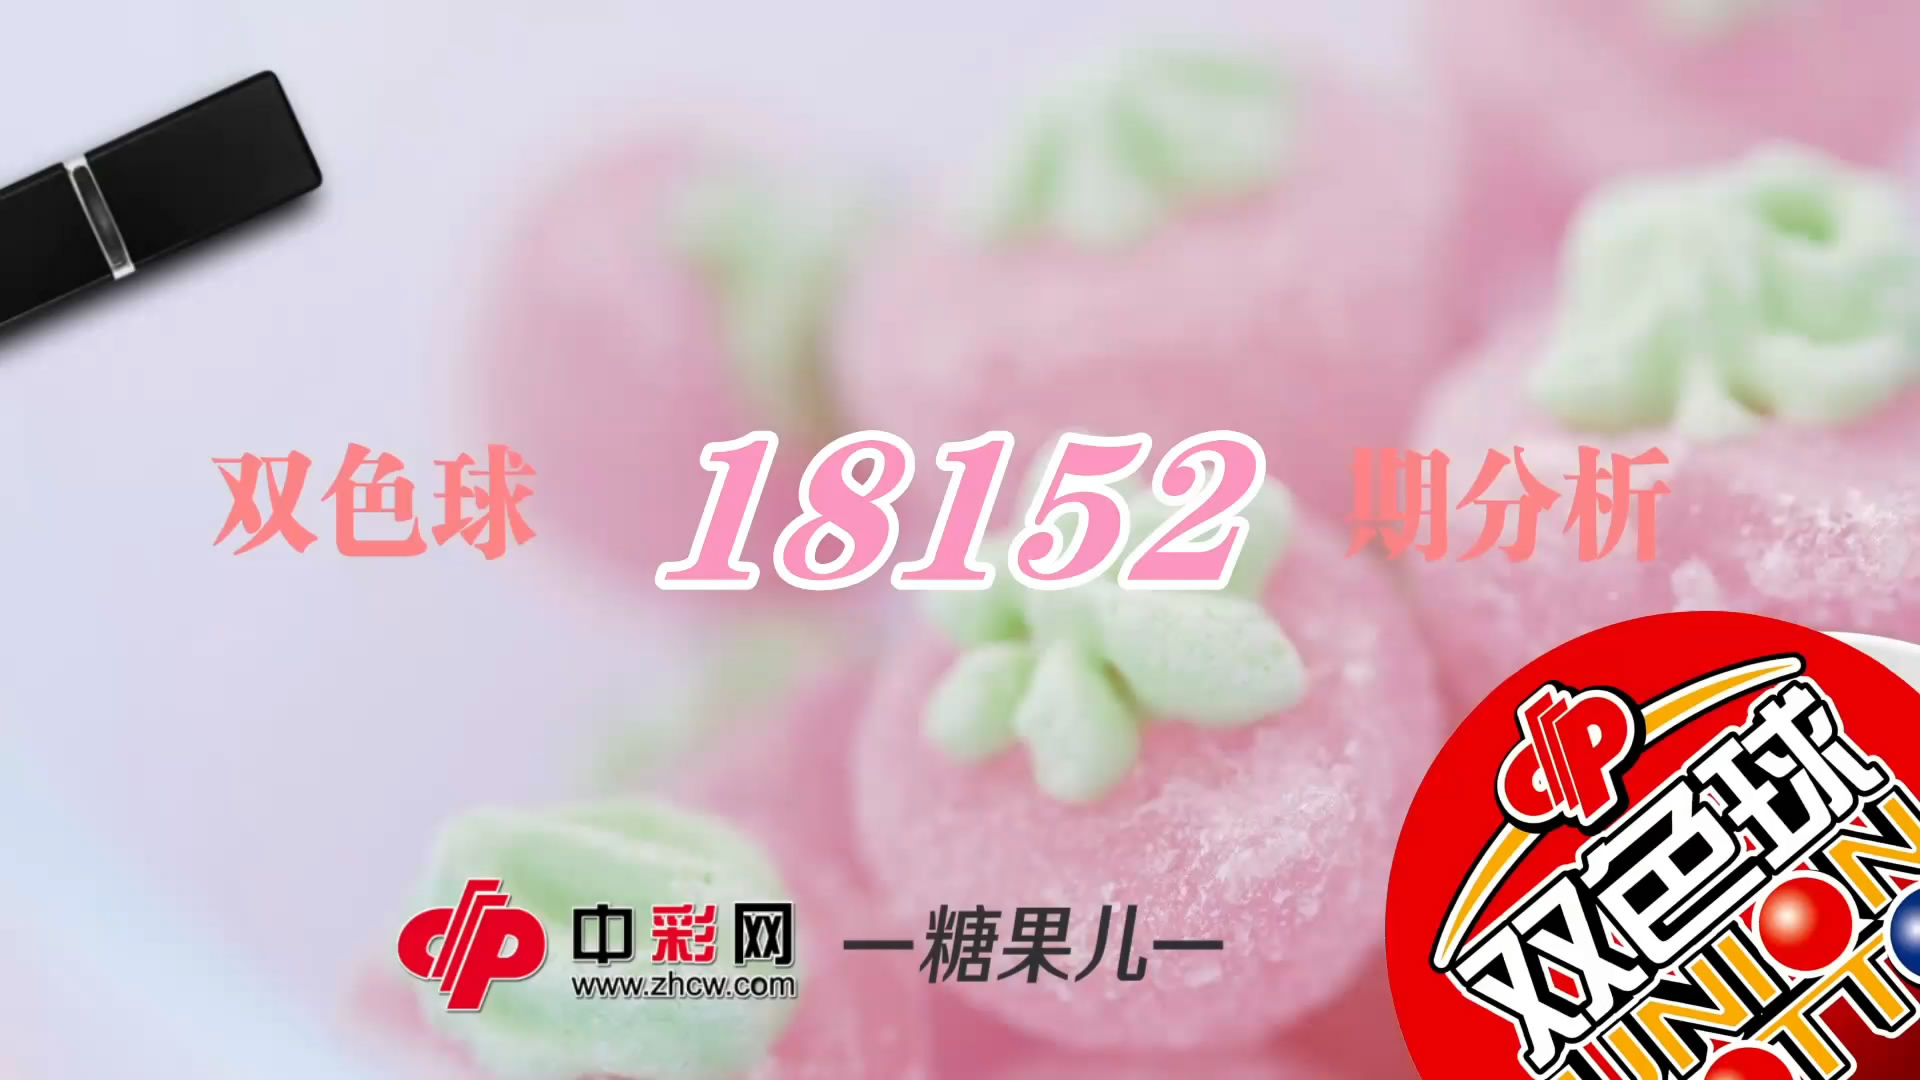 【中彩视频】糖果儿双色球第18152期